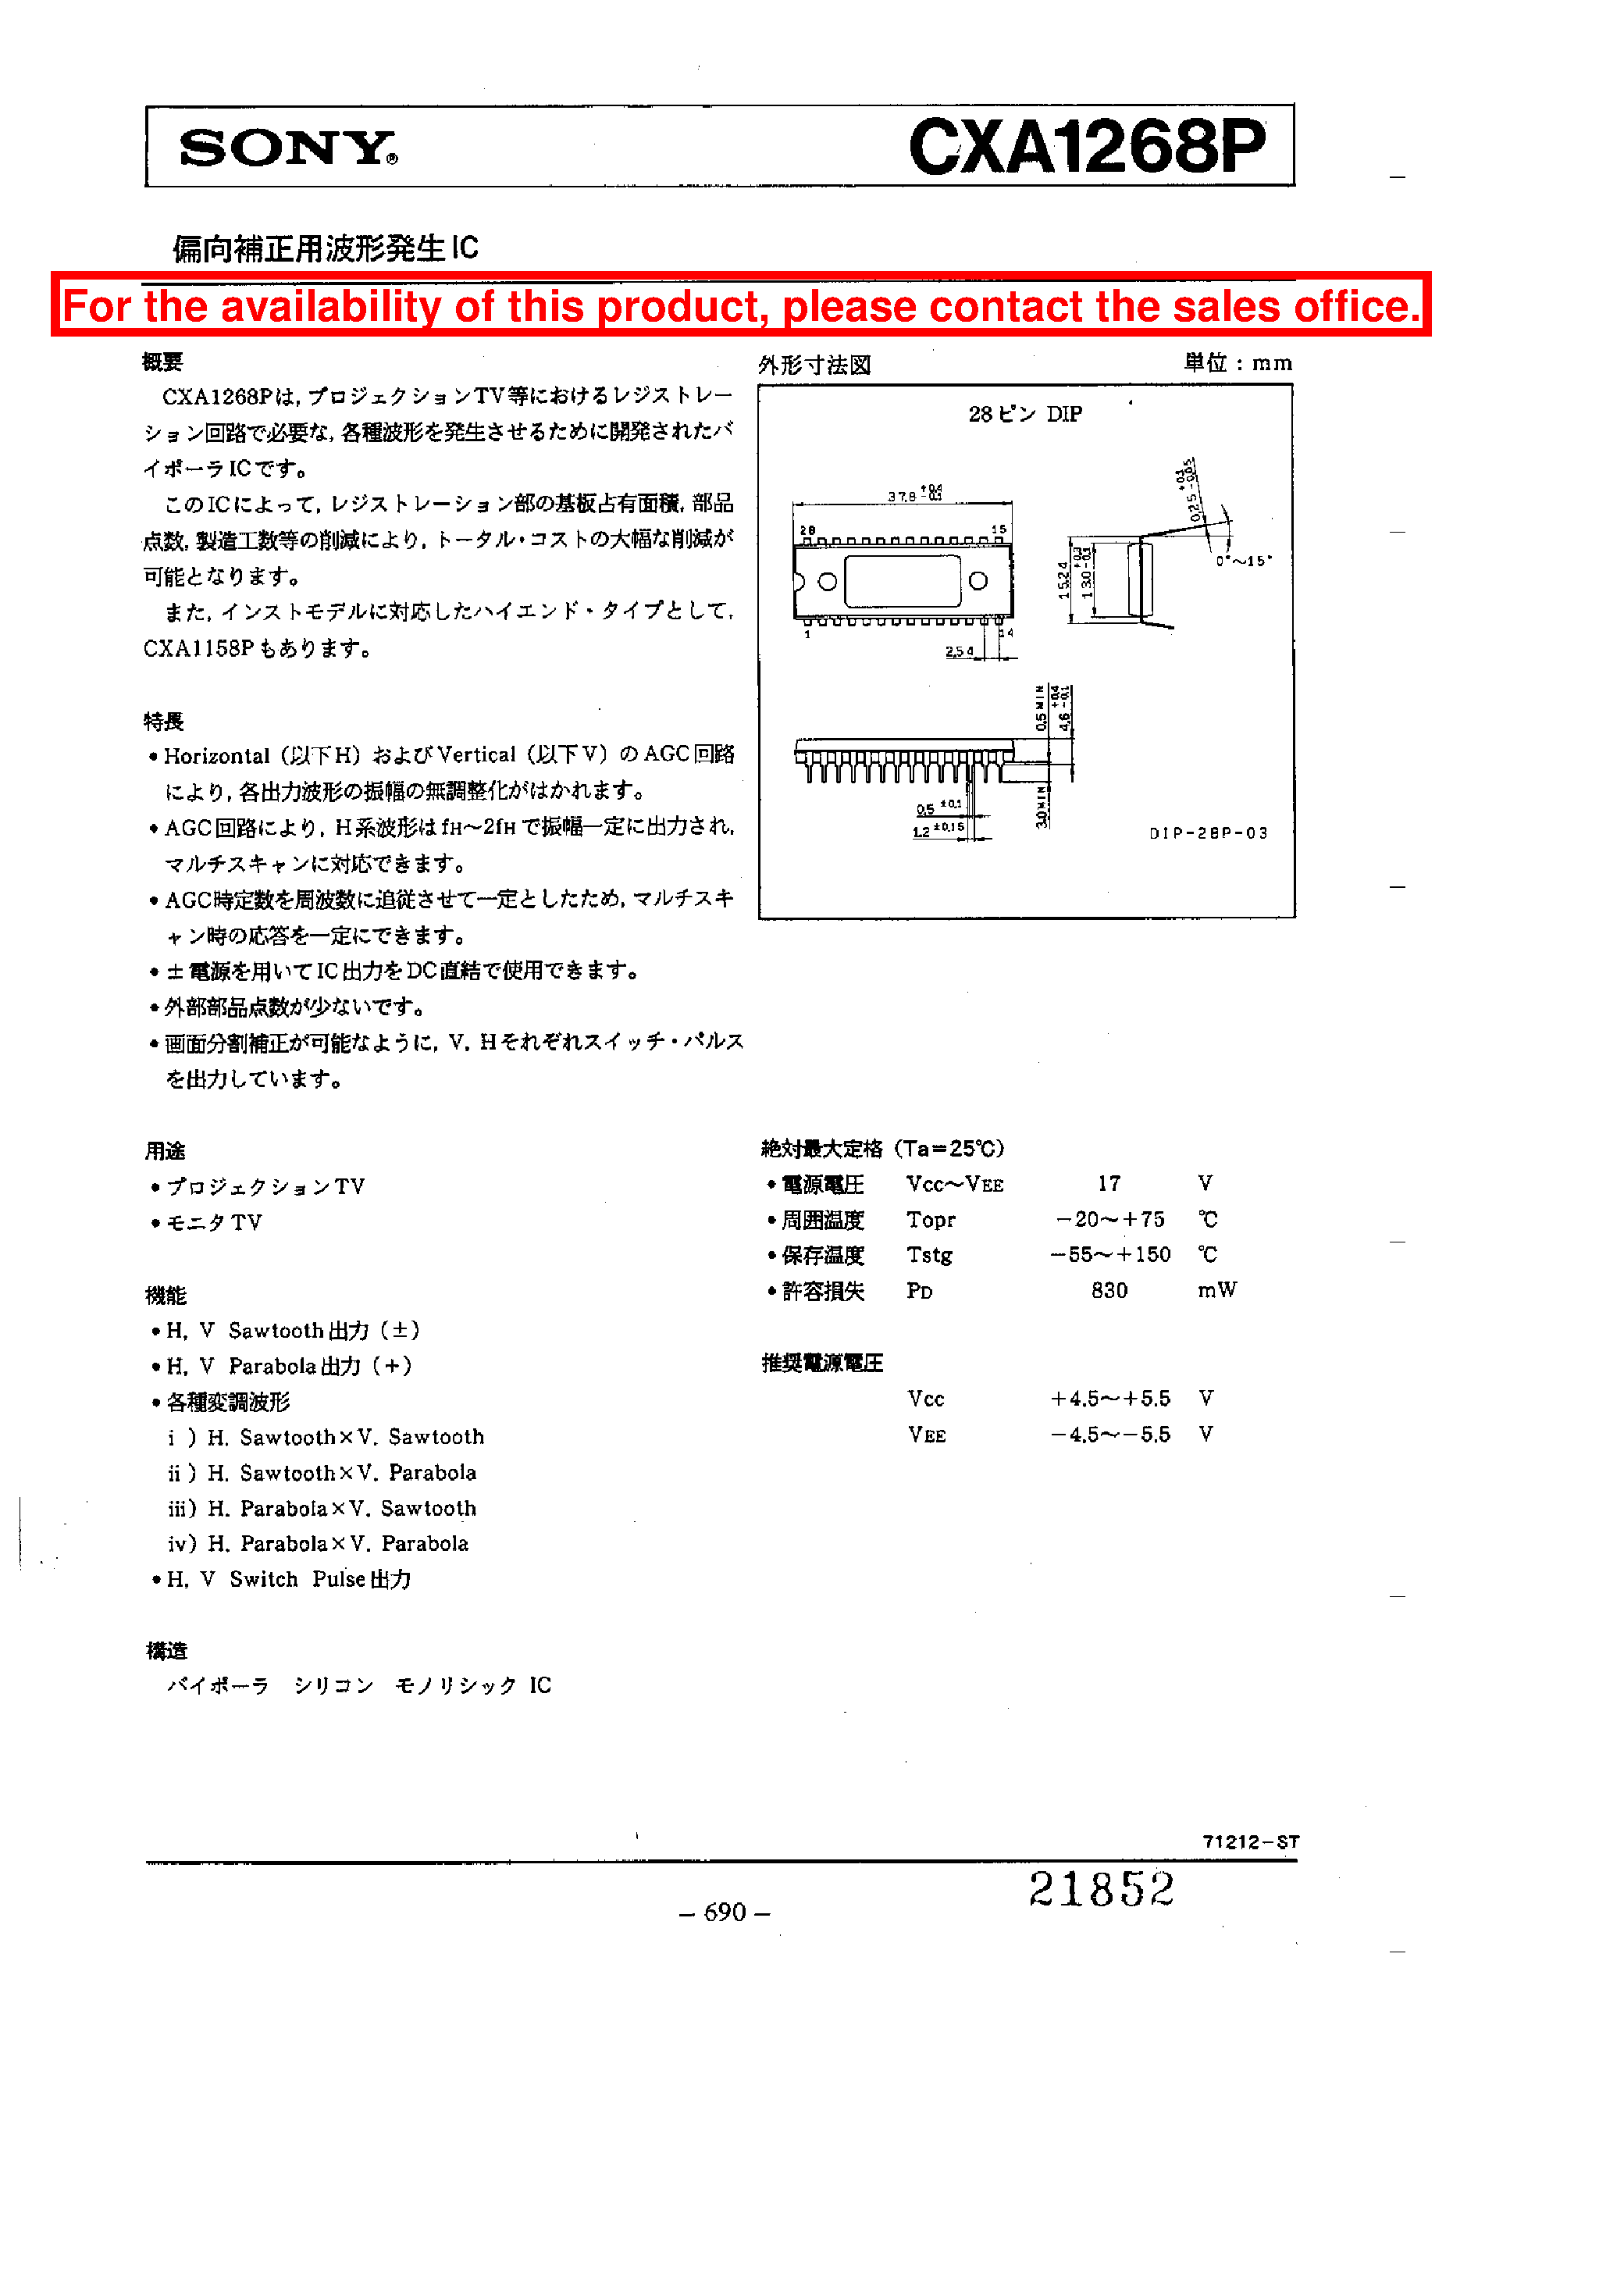 Datasheet CXA1268P - CXA1268P page 1